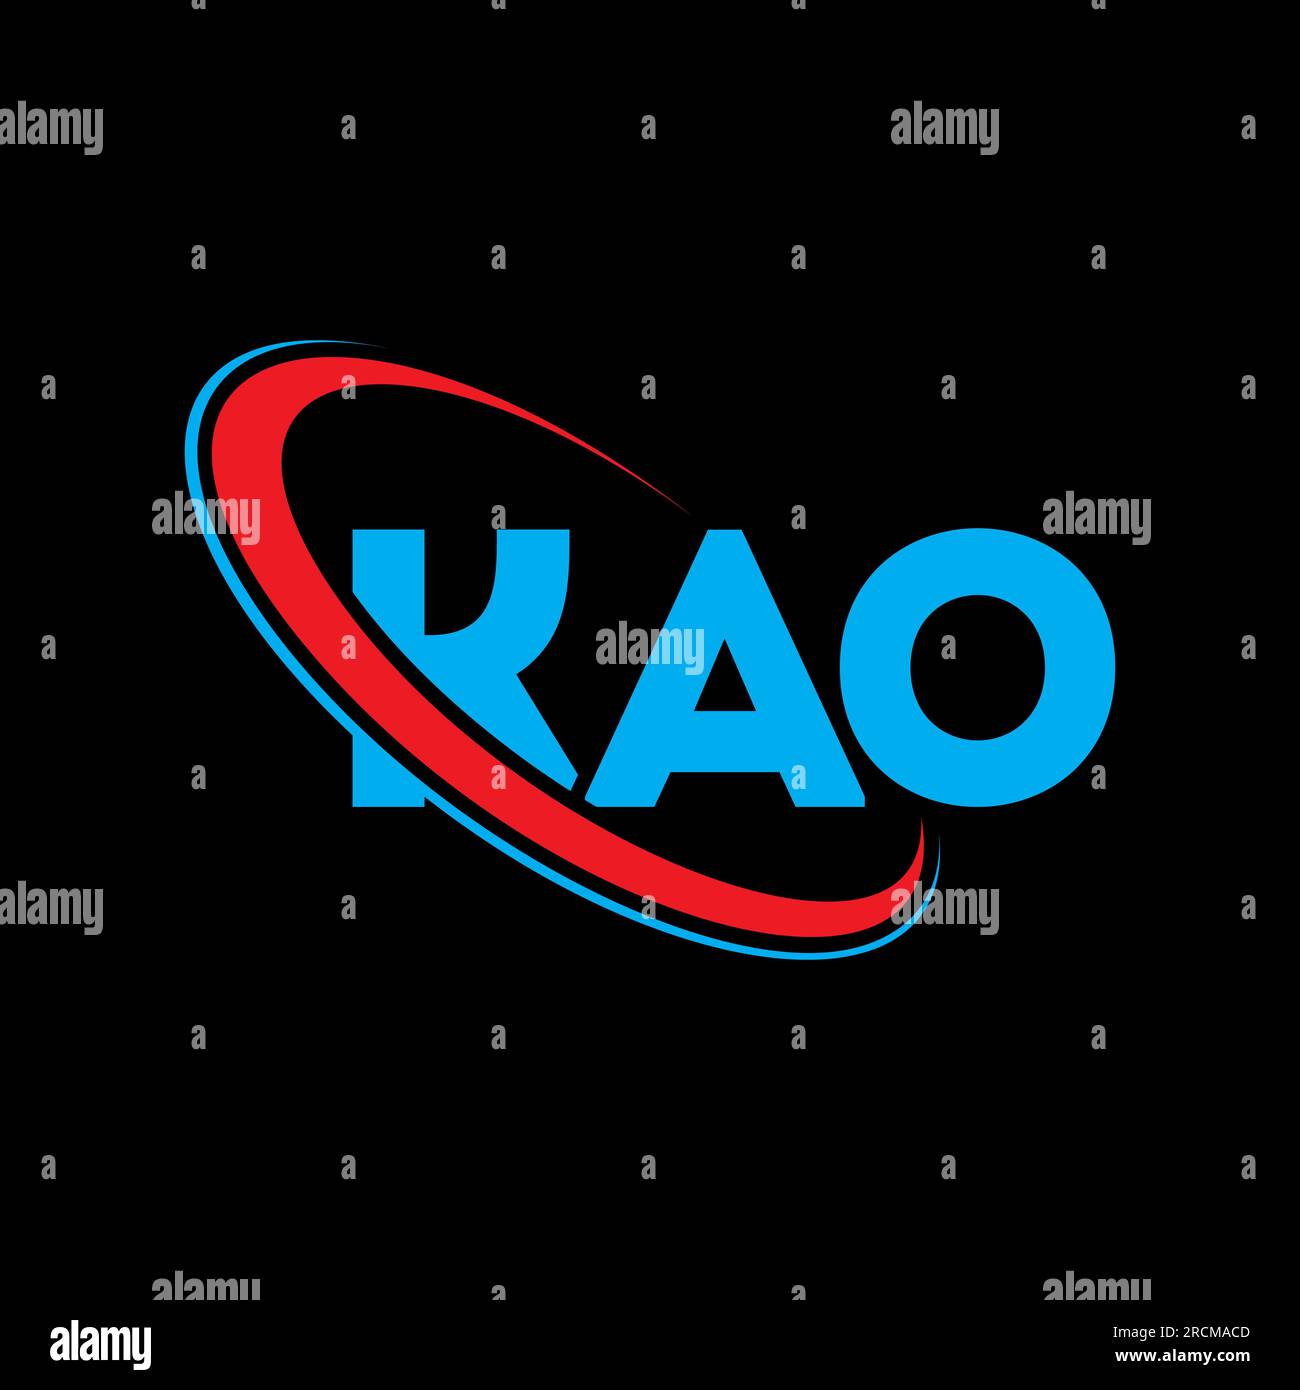 KAO-Logo. KAO-Brief. LOGO mit KAO-Buchstaben. Initialen KAO-Logo, verbunden mit einem Kreis und einem Monogramm-Logo in Großbuchstaben. KAO-Typografie für Technologie, Geschäfte Stock Vektor